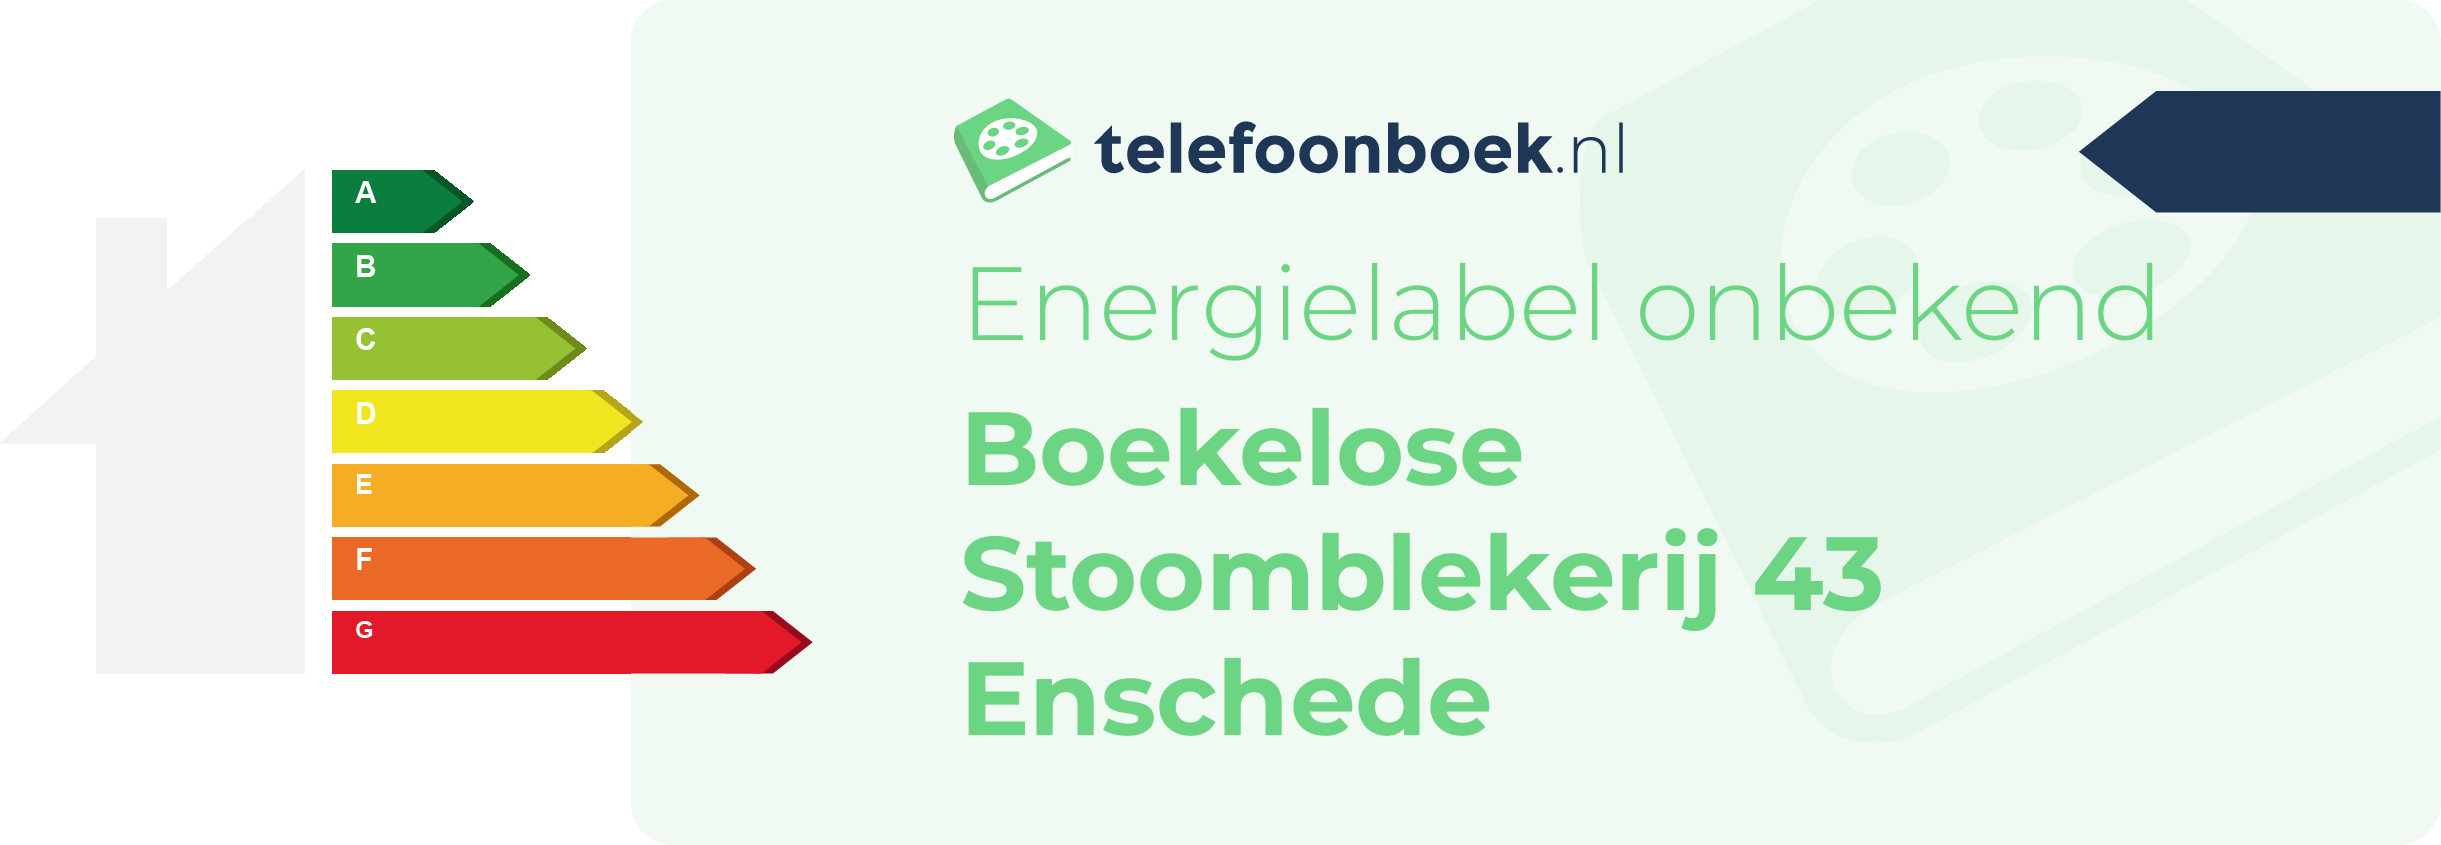 Energielabel Boekelose Stoomblekerij 43 Enschede